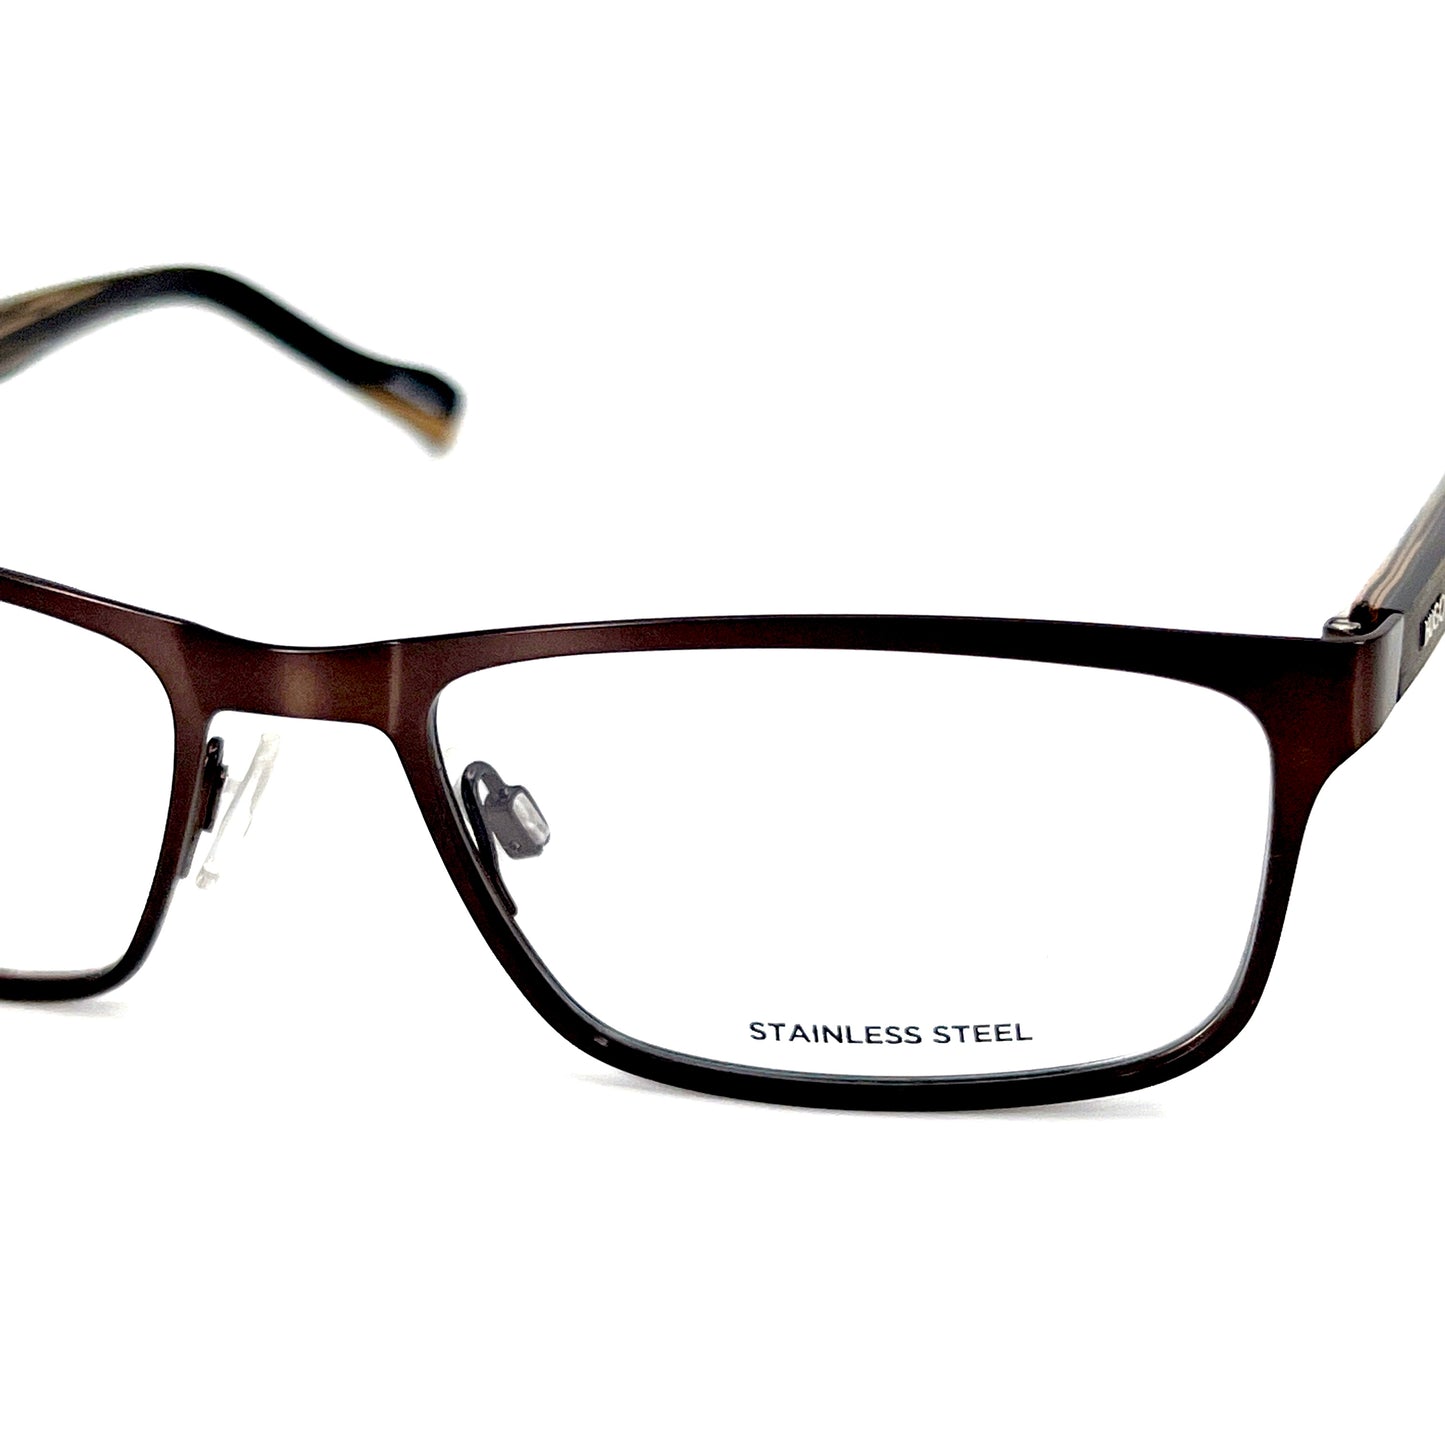 HUGO BOSS Eyeglasses HG0151 4IN